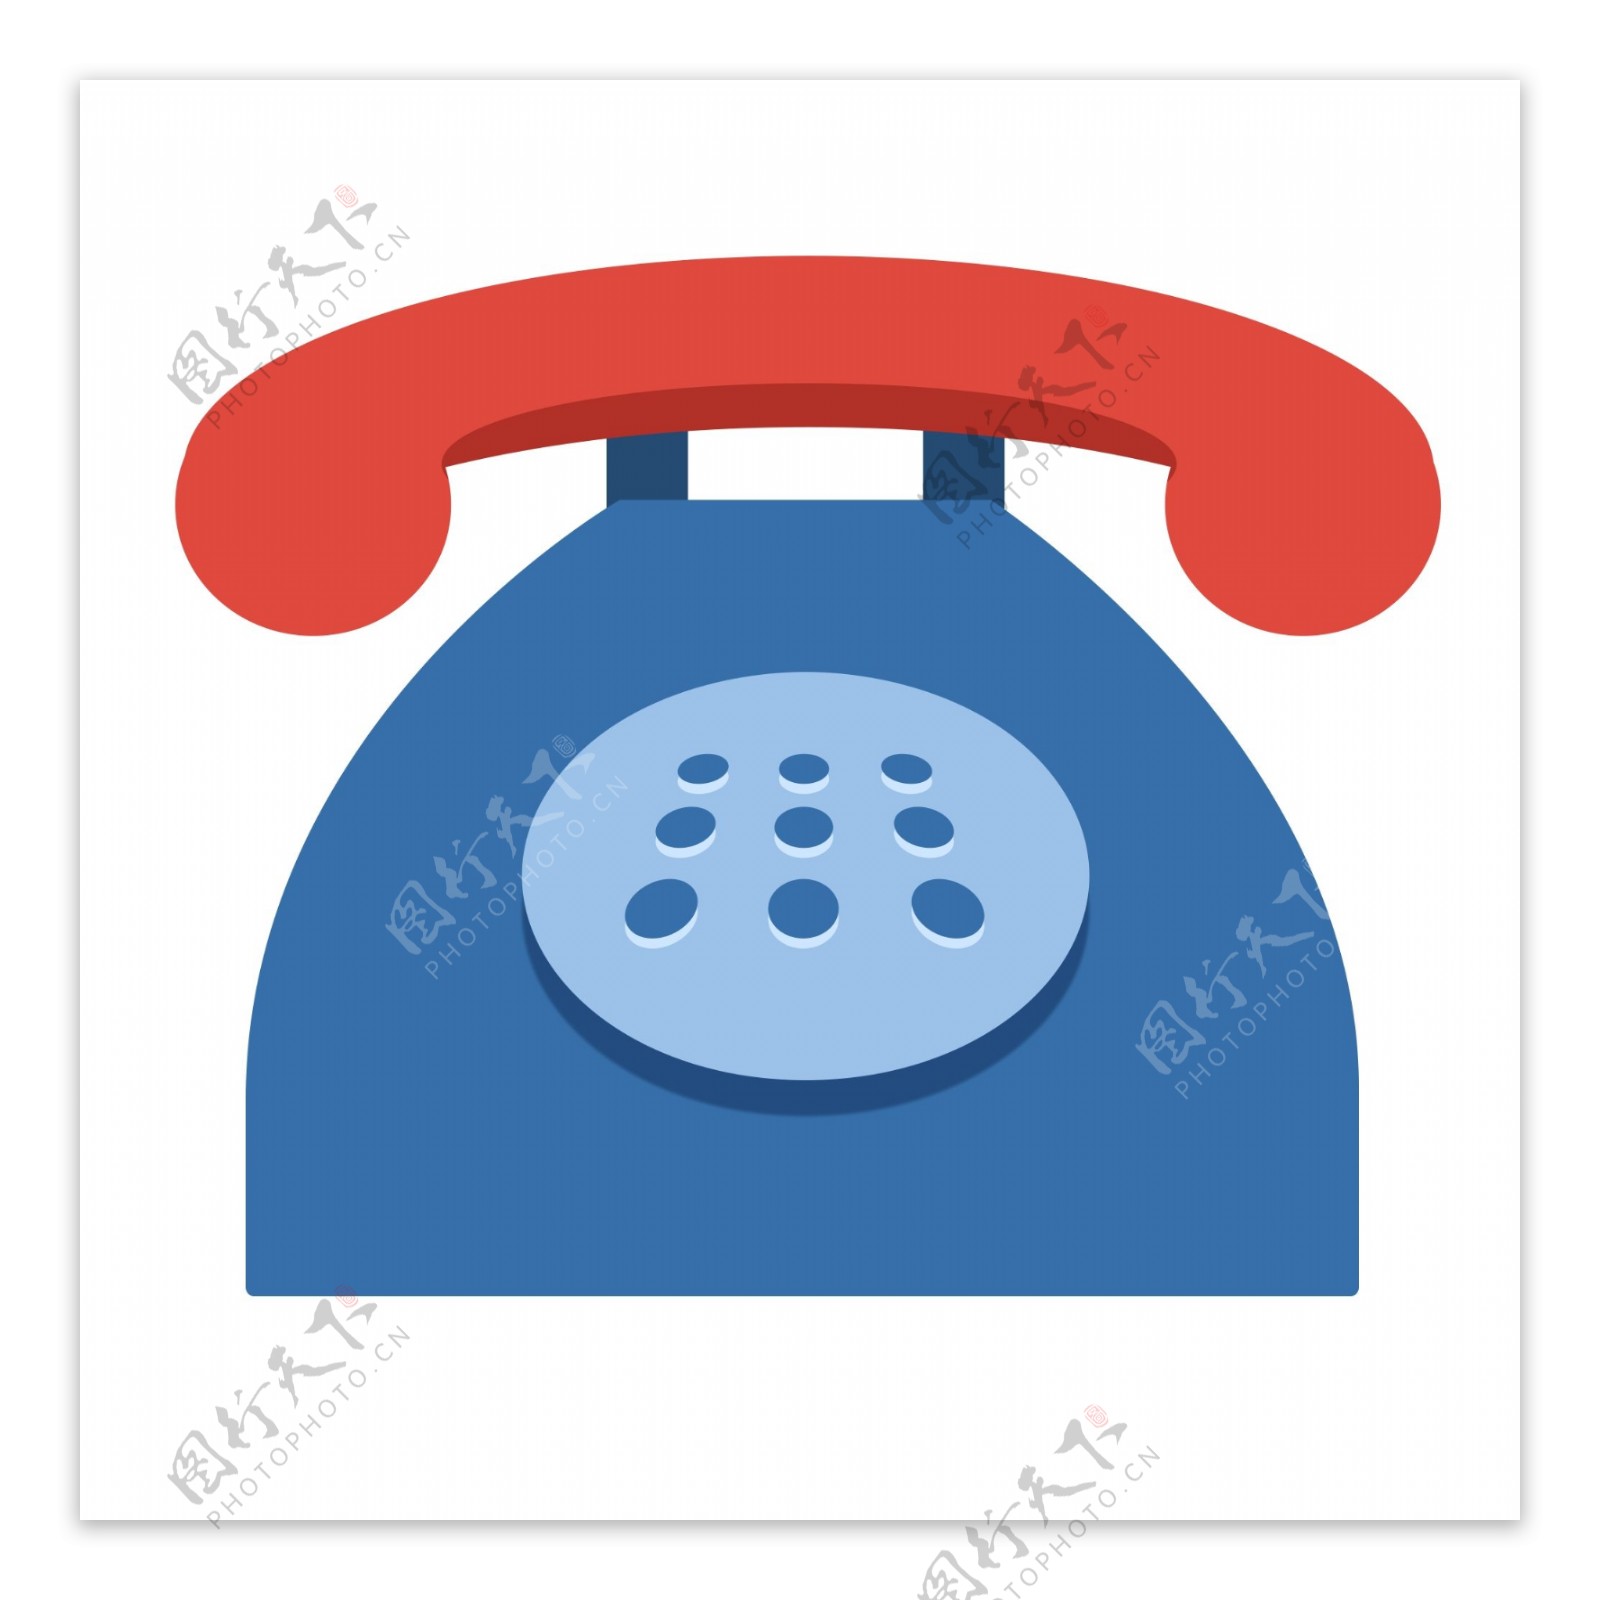 红蓝色的复古电话机